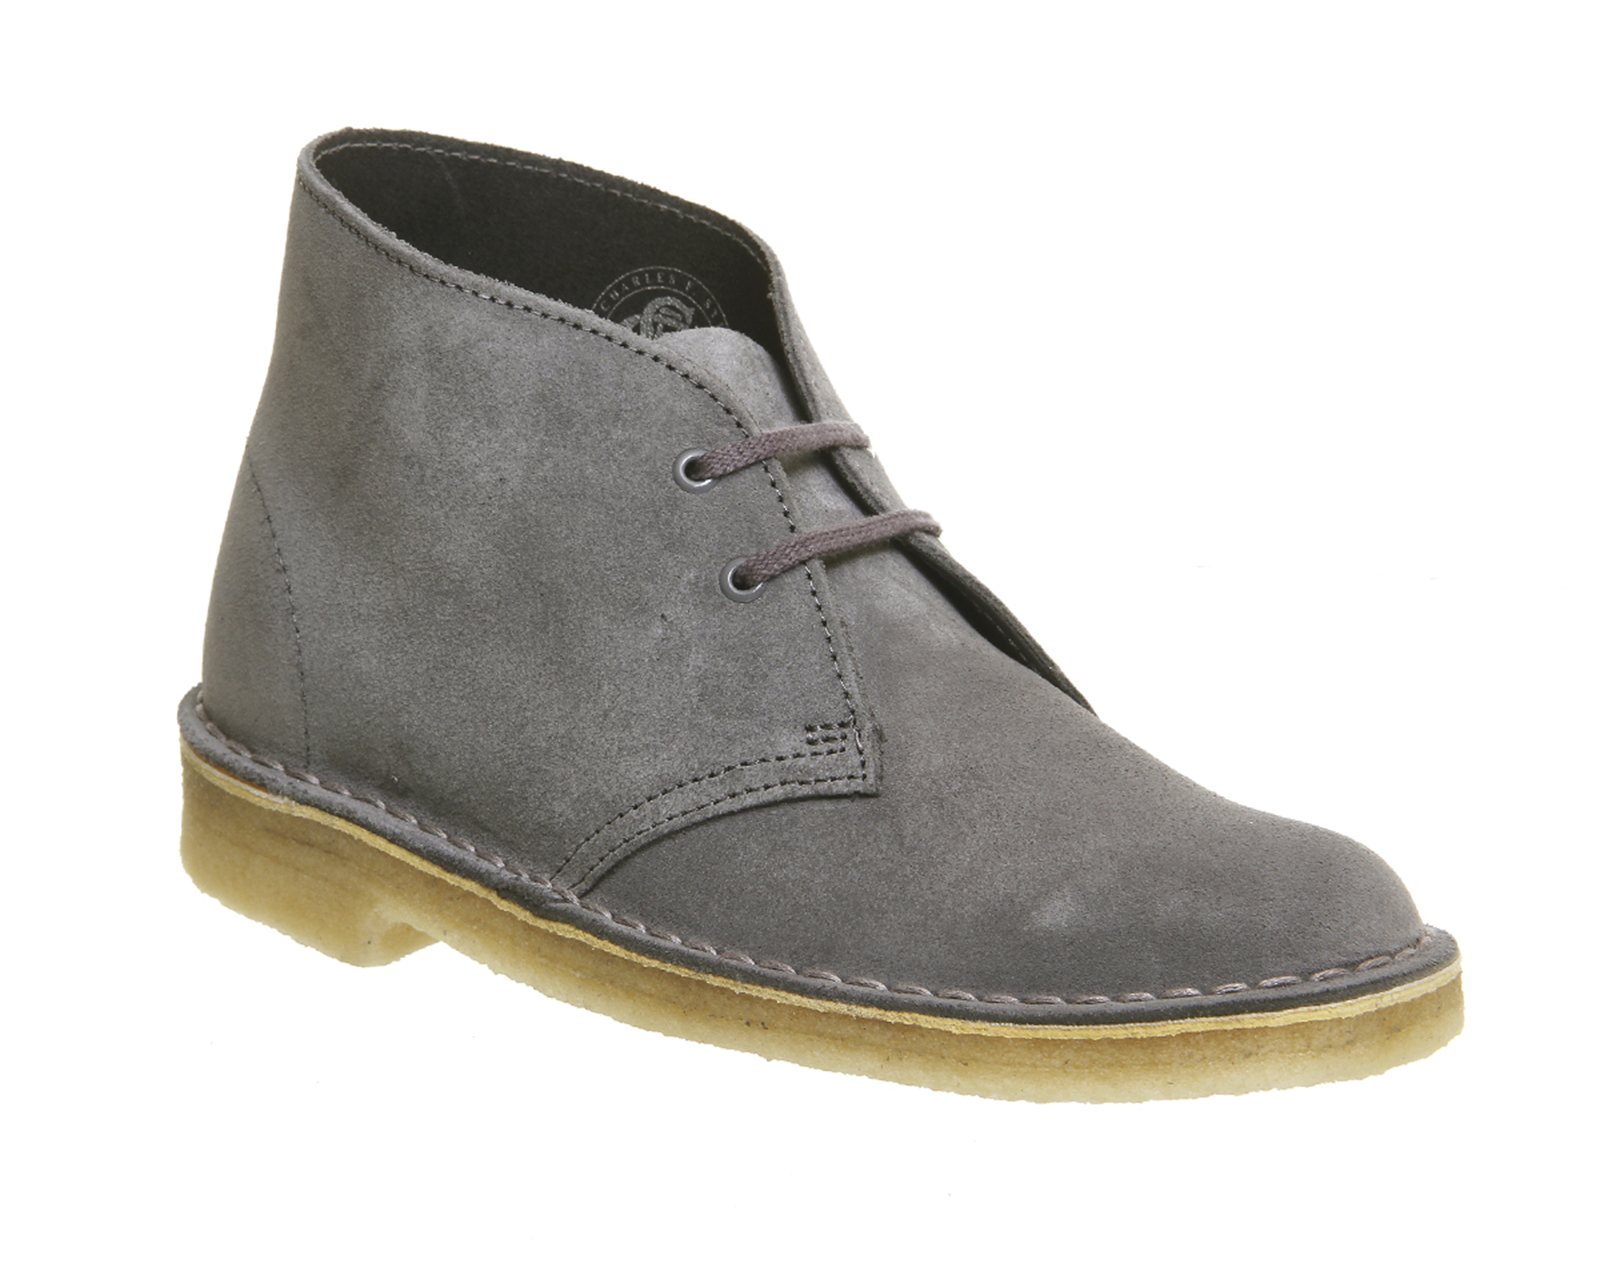 clarks desert boots grey suede buy 